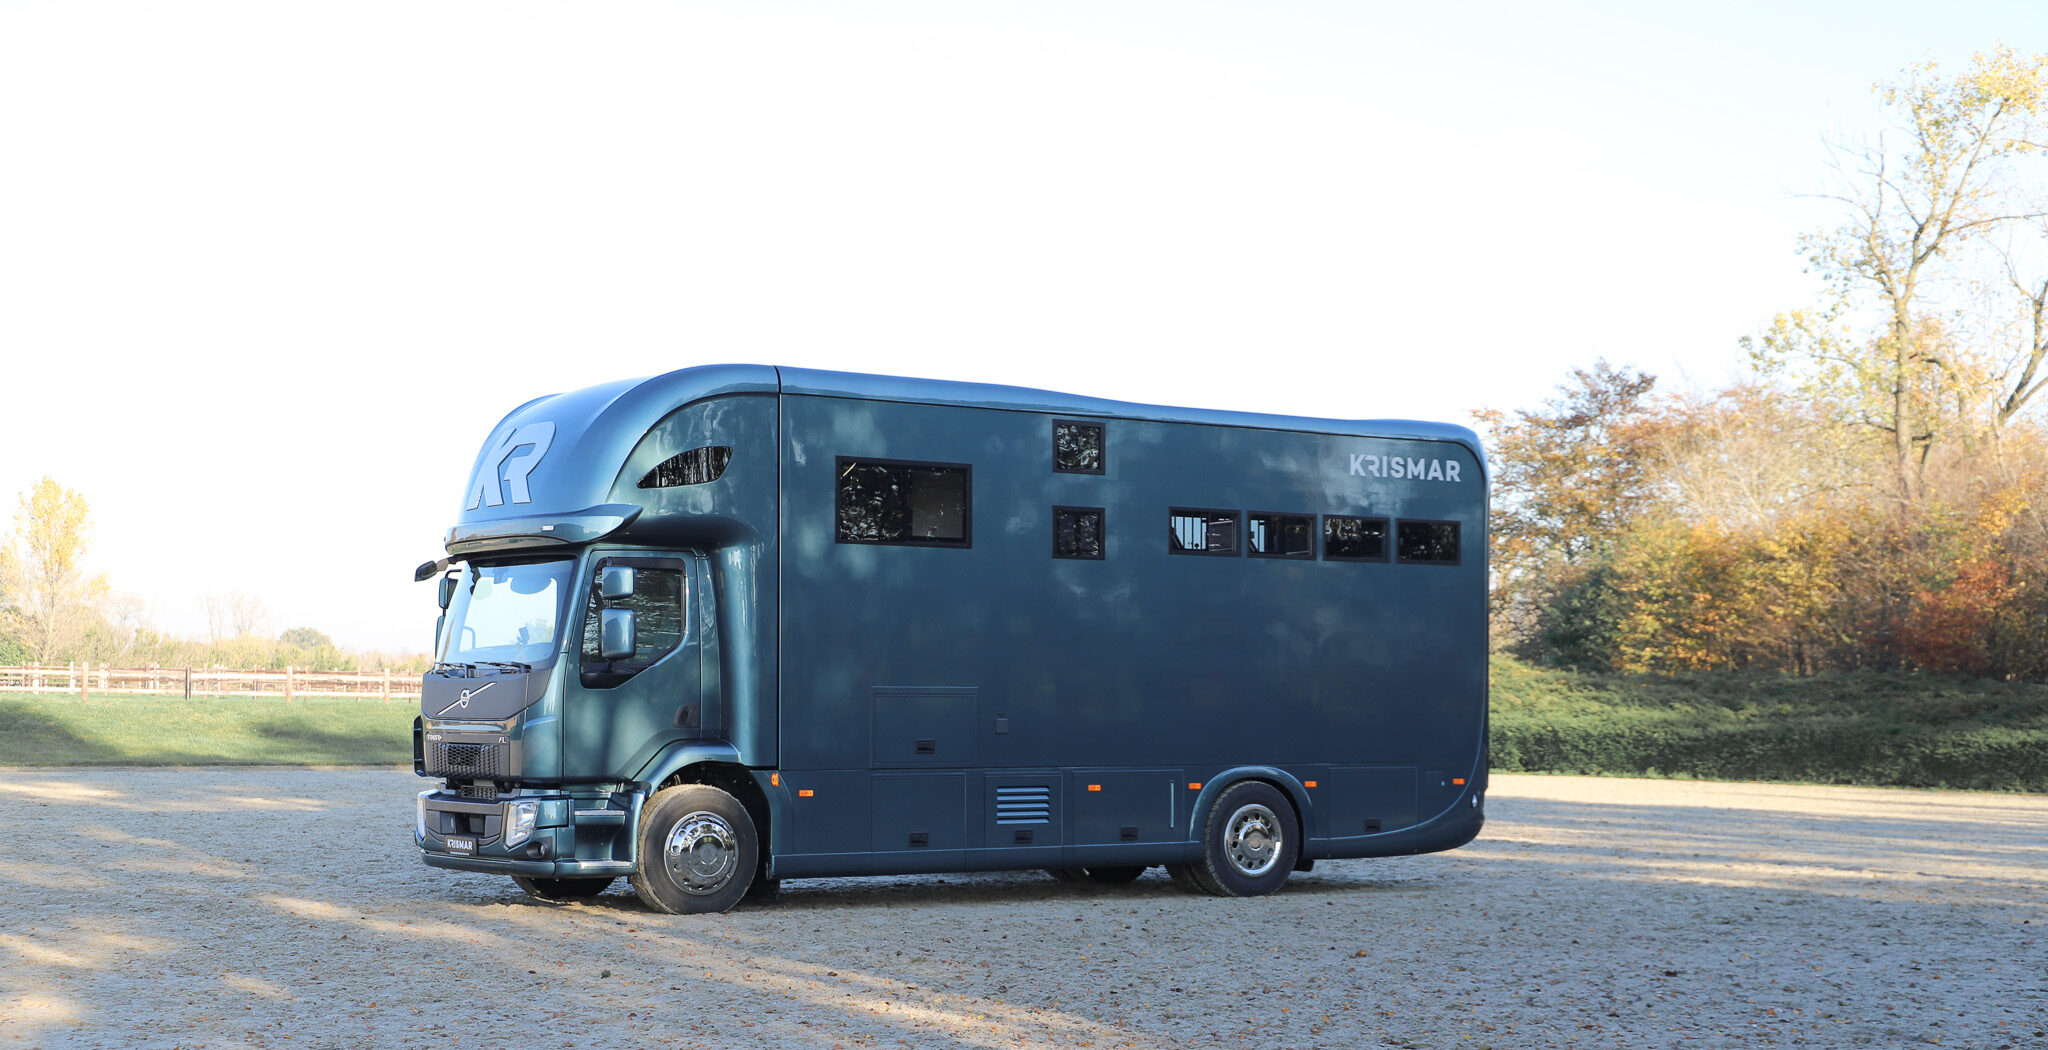 Een Krismar paardenvrachtwagen met ruimte voor 4 paarden in een mooie petrolgroene kleur